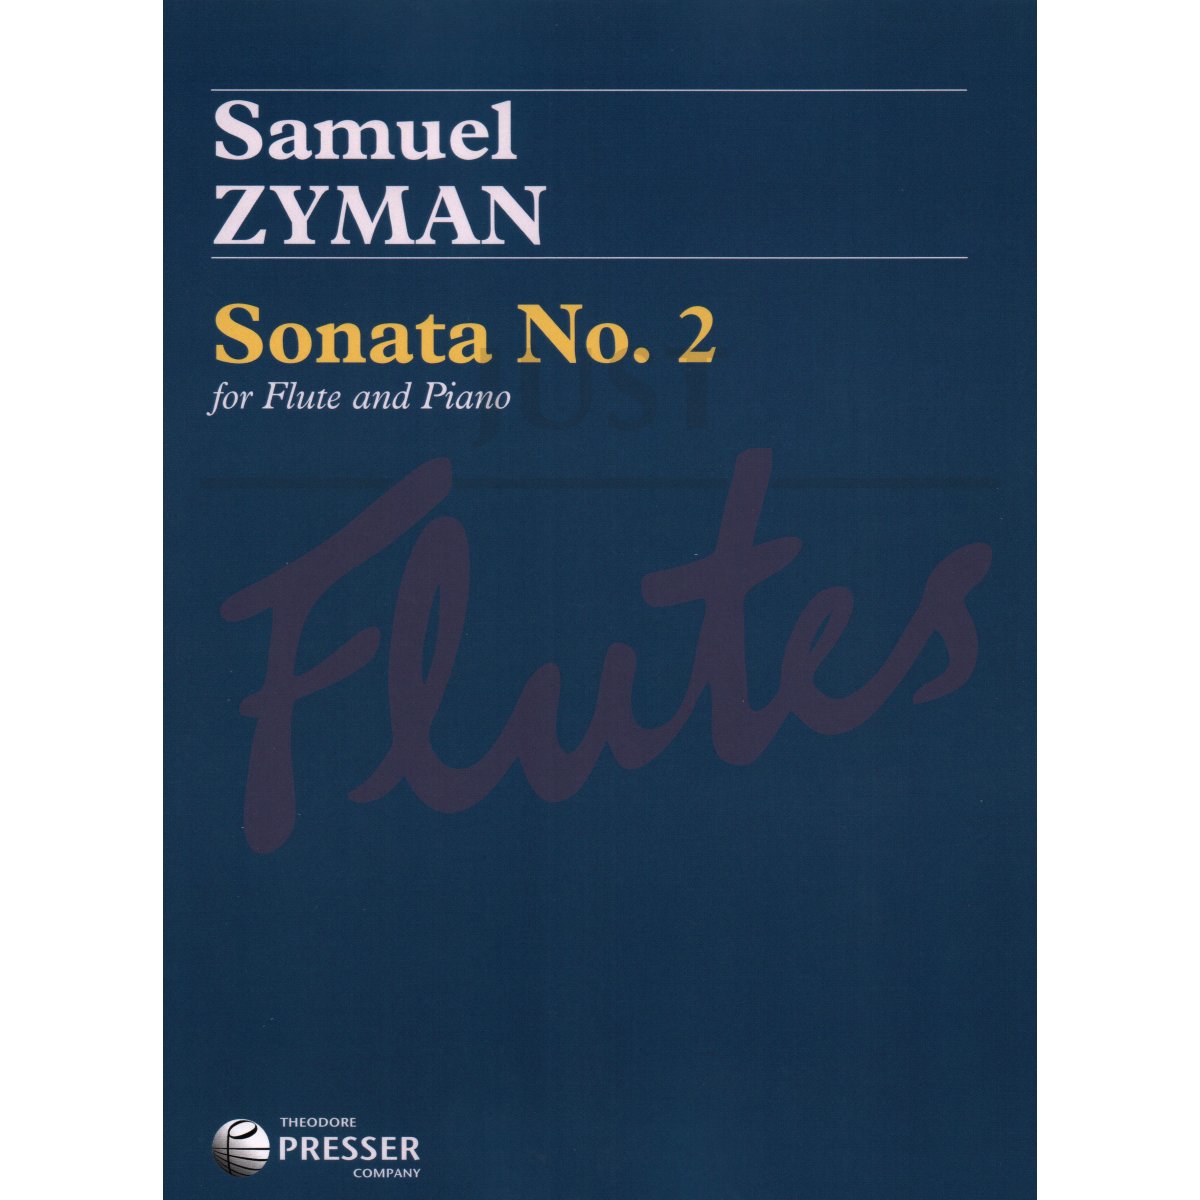 Sonata No. 2 for Flute and Piano